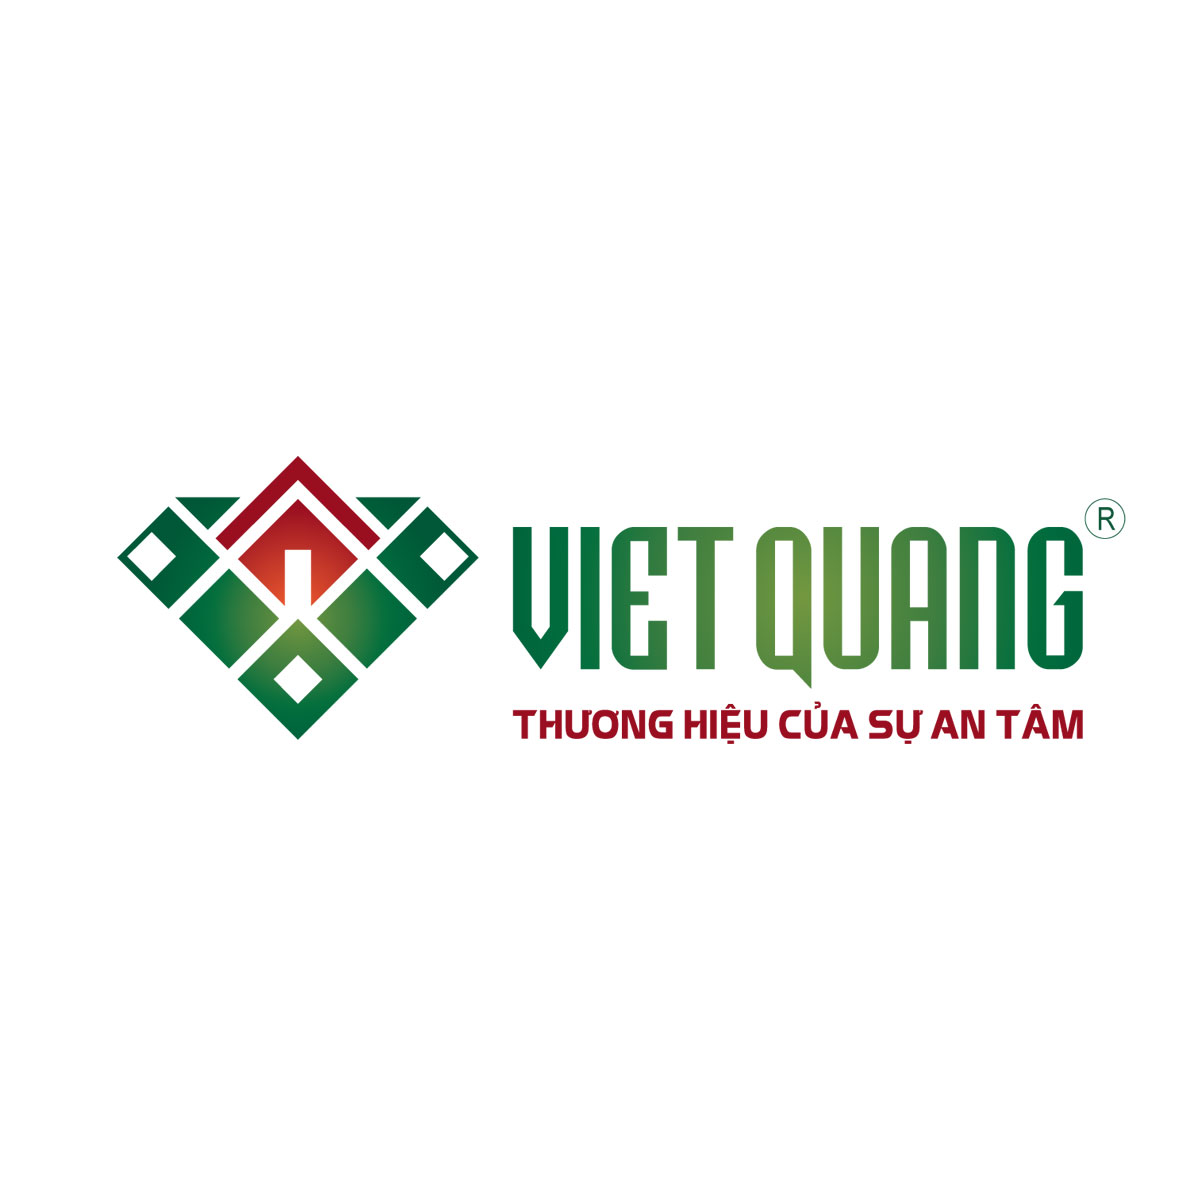 Xây Dựng Việt Quang